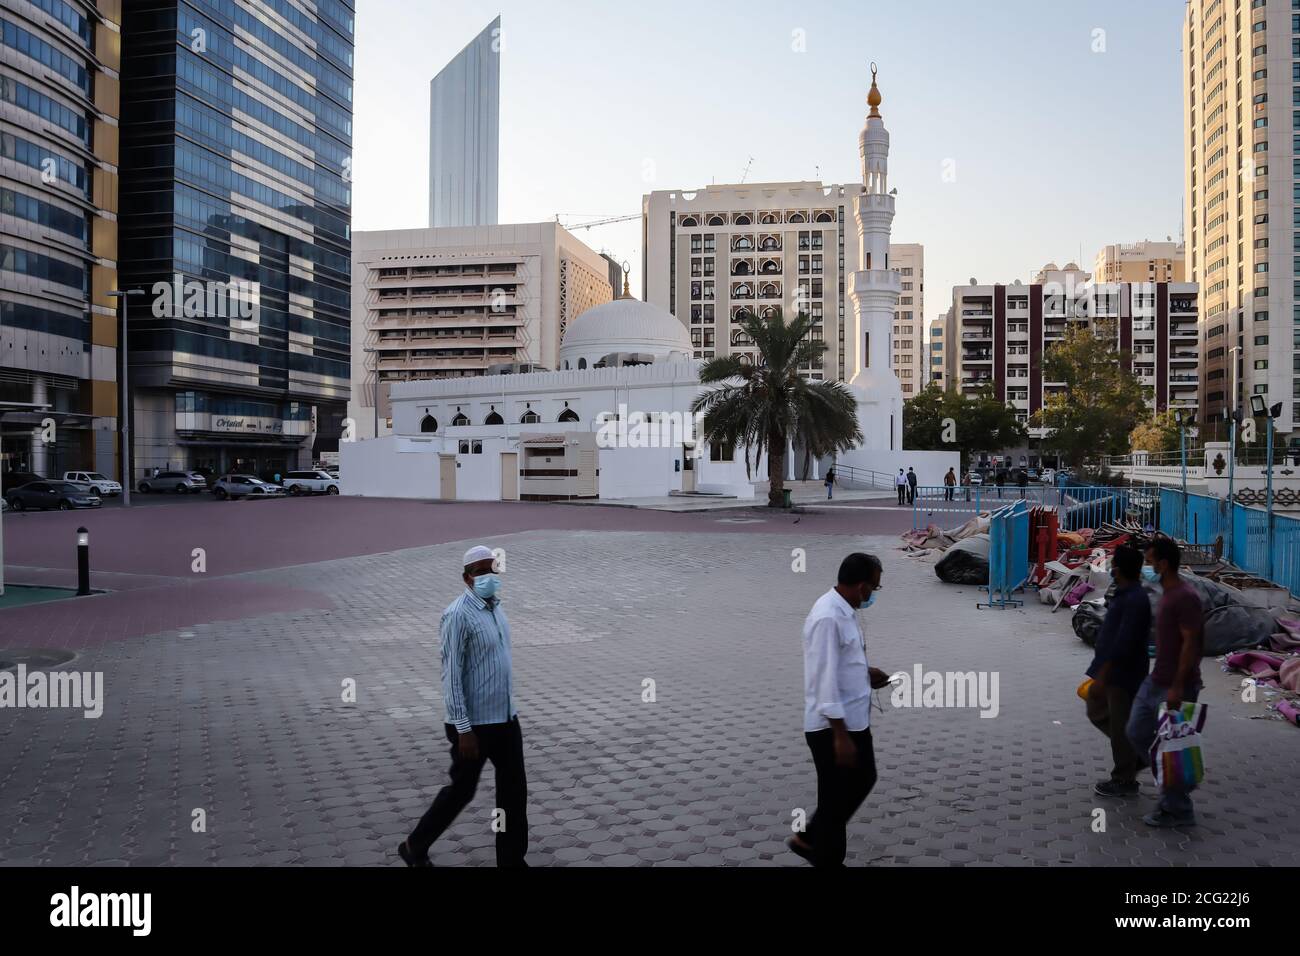 Abu Dhabi City style de vie au moment des épidémies de coronavirus, 8 septembre 2020 - Émirats arabes Unis. Mouvement flou par l'exposition à long terme, pande Banque D'Images